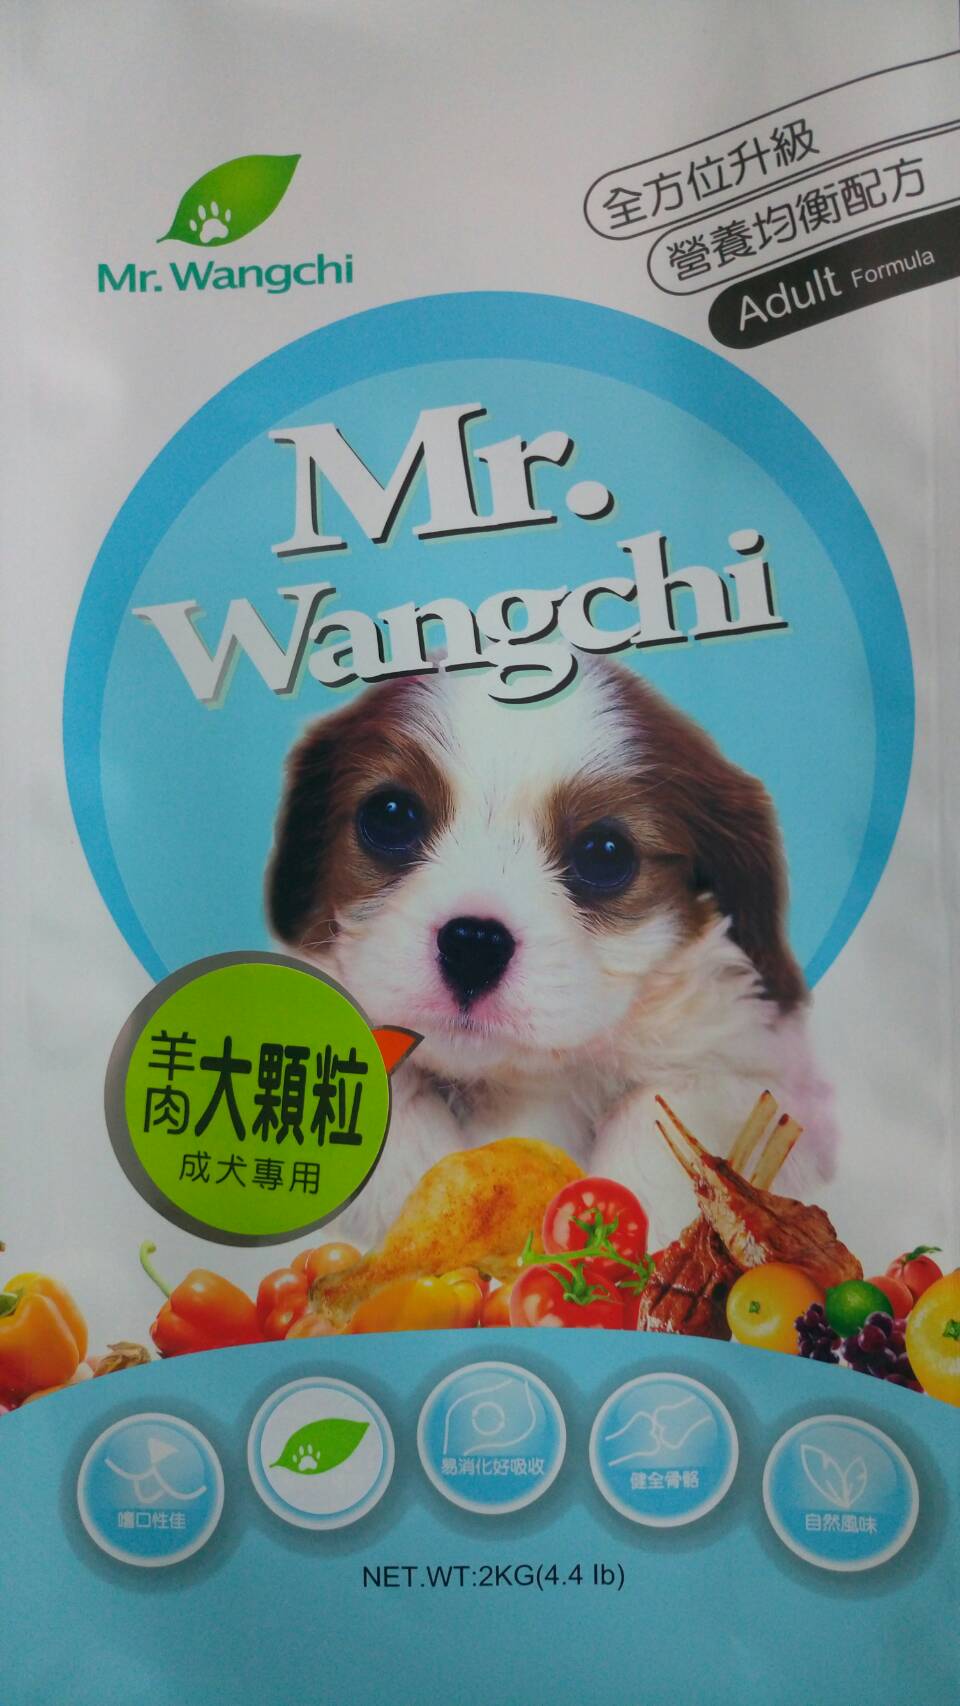 旺奇先生:羊肉大顆粒成犬專用
Mr.Wangchi